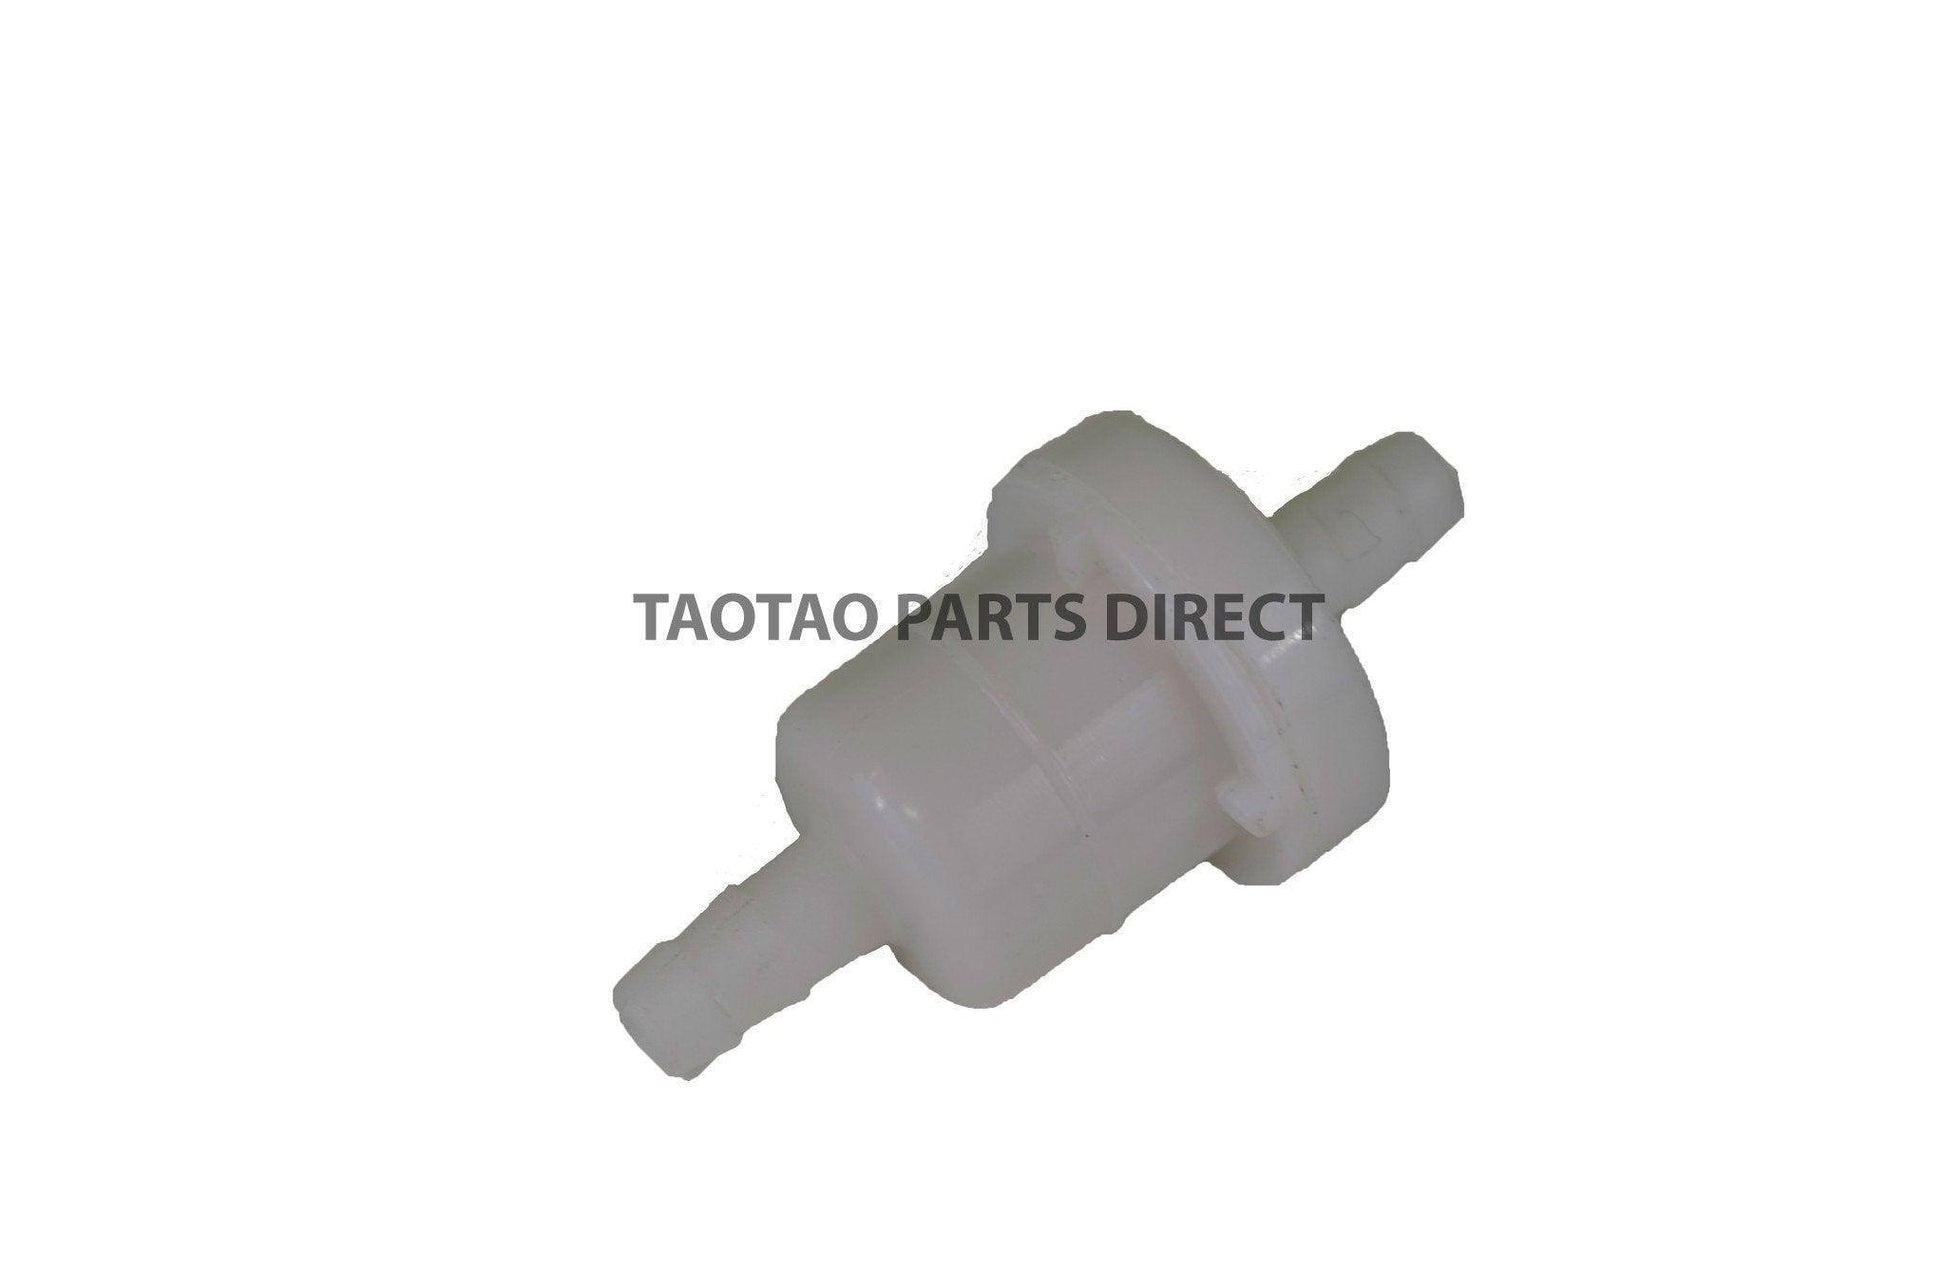 Premium Fuel Filter for TaoTao PowerSports Machines - TaoTao Parts Direct